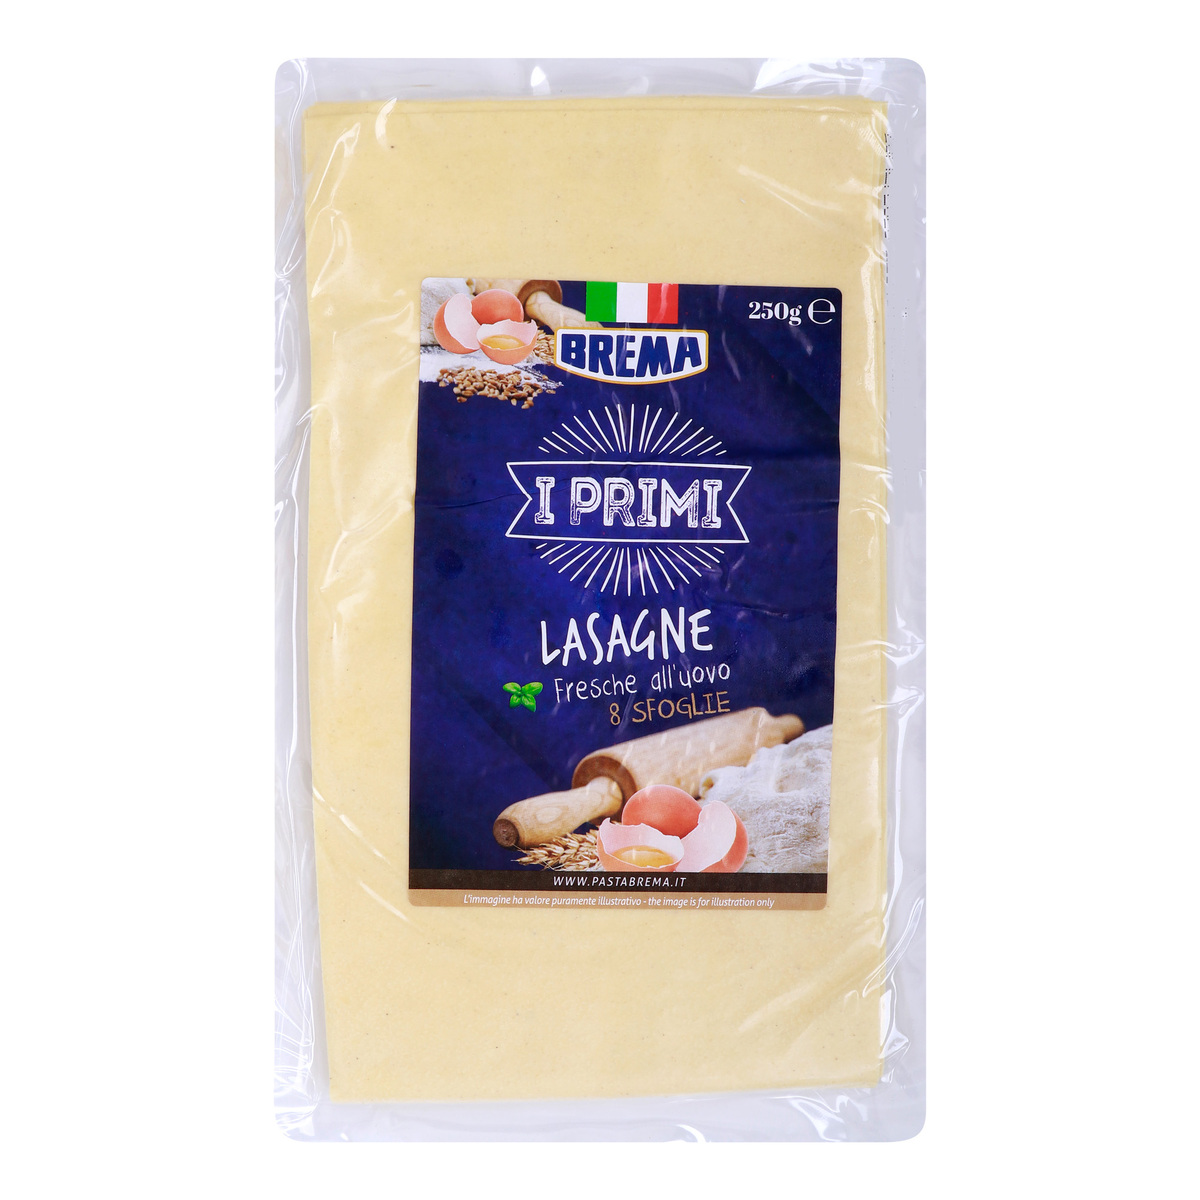 Brema Lasagne Fresh Egg Pasta, 8 Sfoglie, 250 g